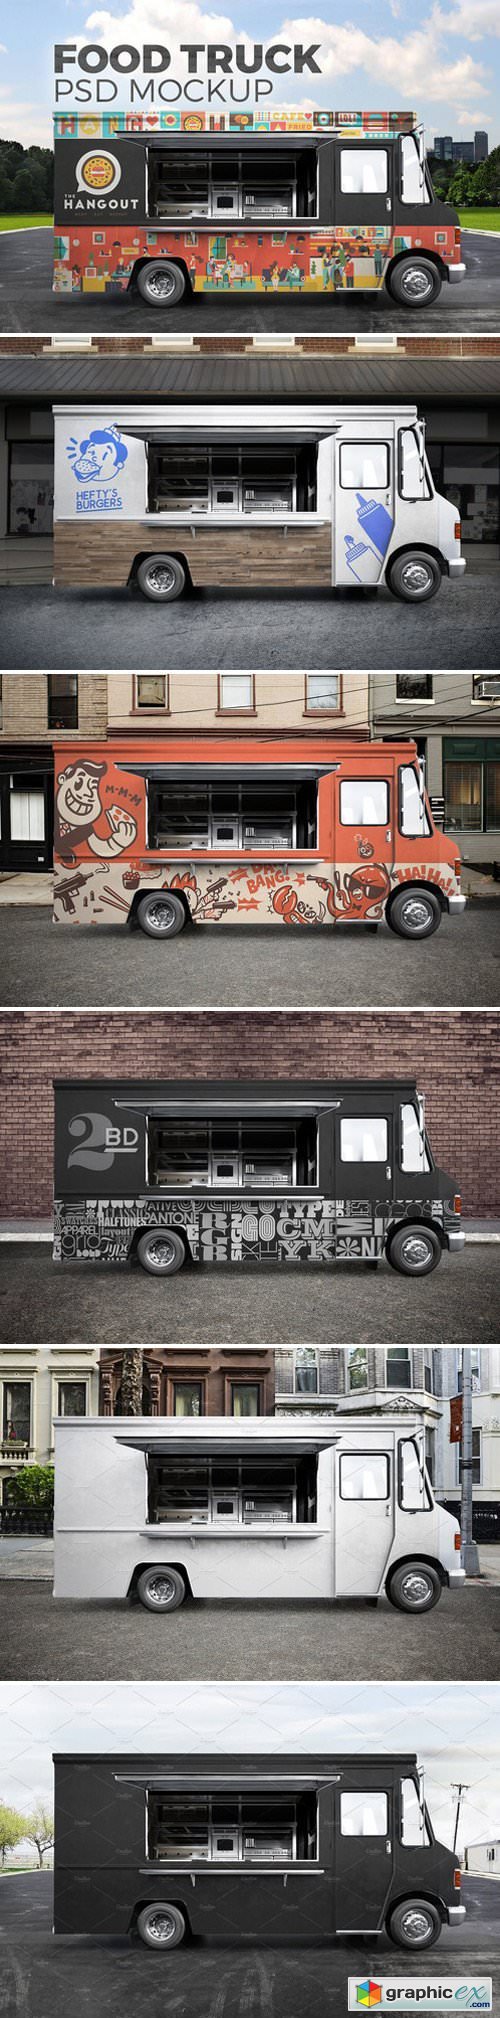 Food truck. PSD Mockup